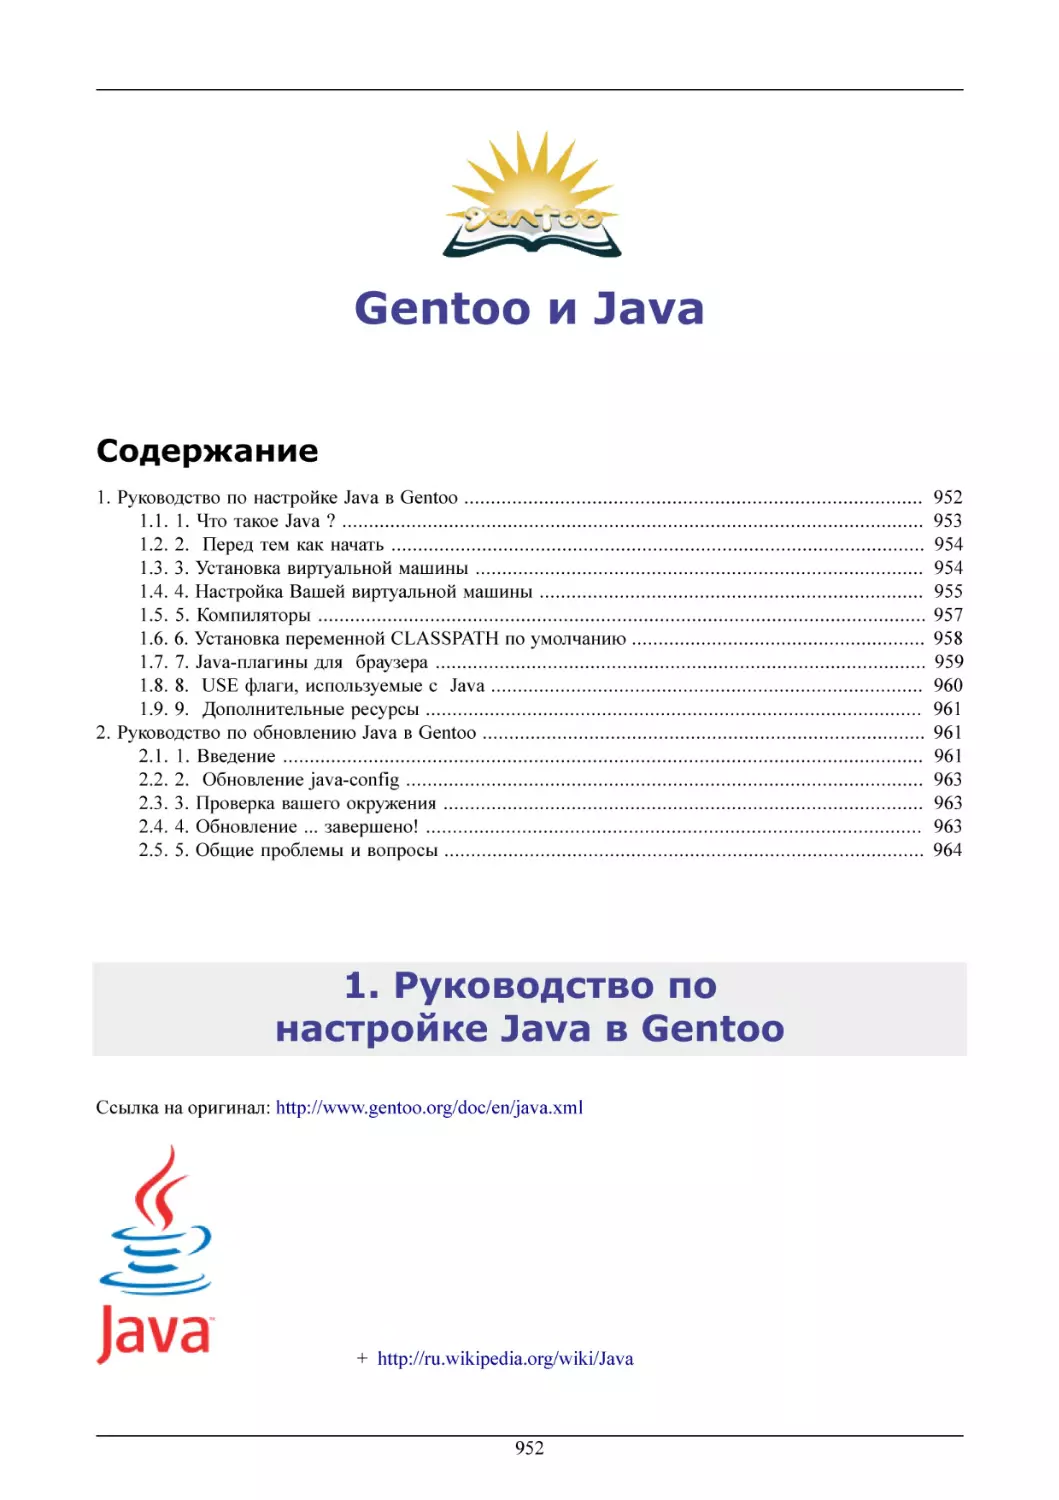 Gentoo и Java
Руководство по настройке Java в Gentoo